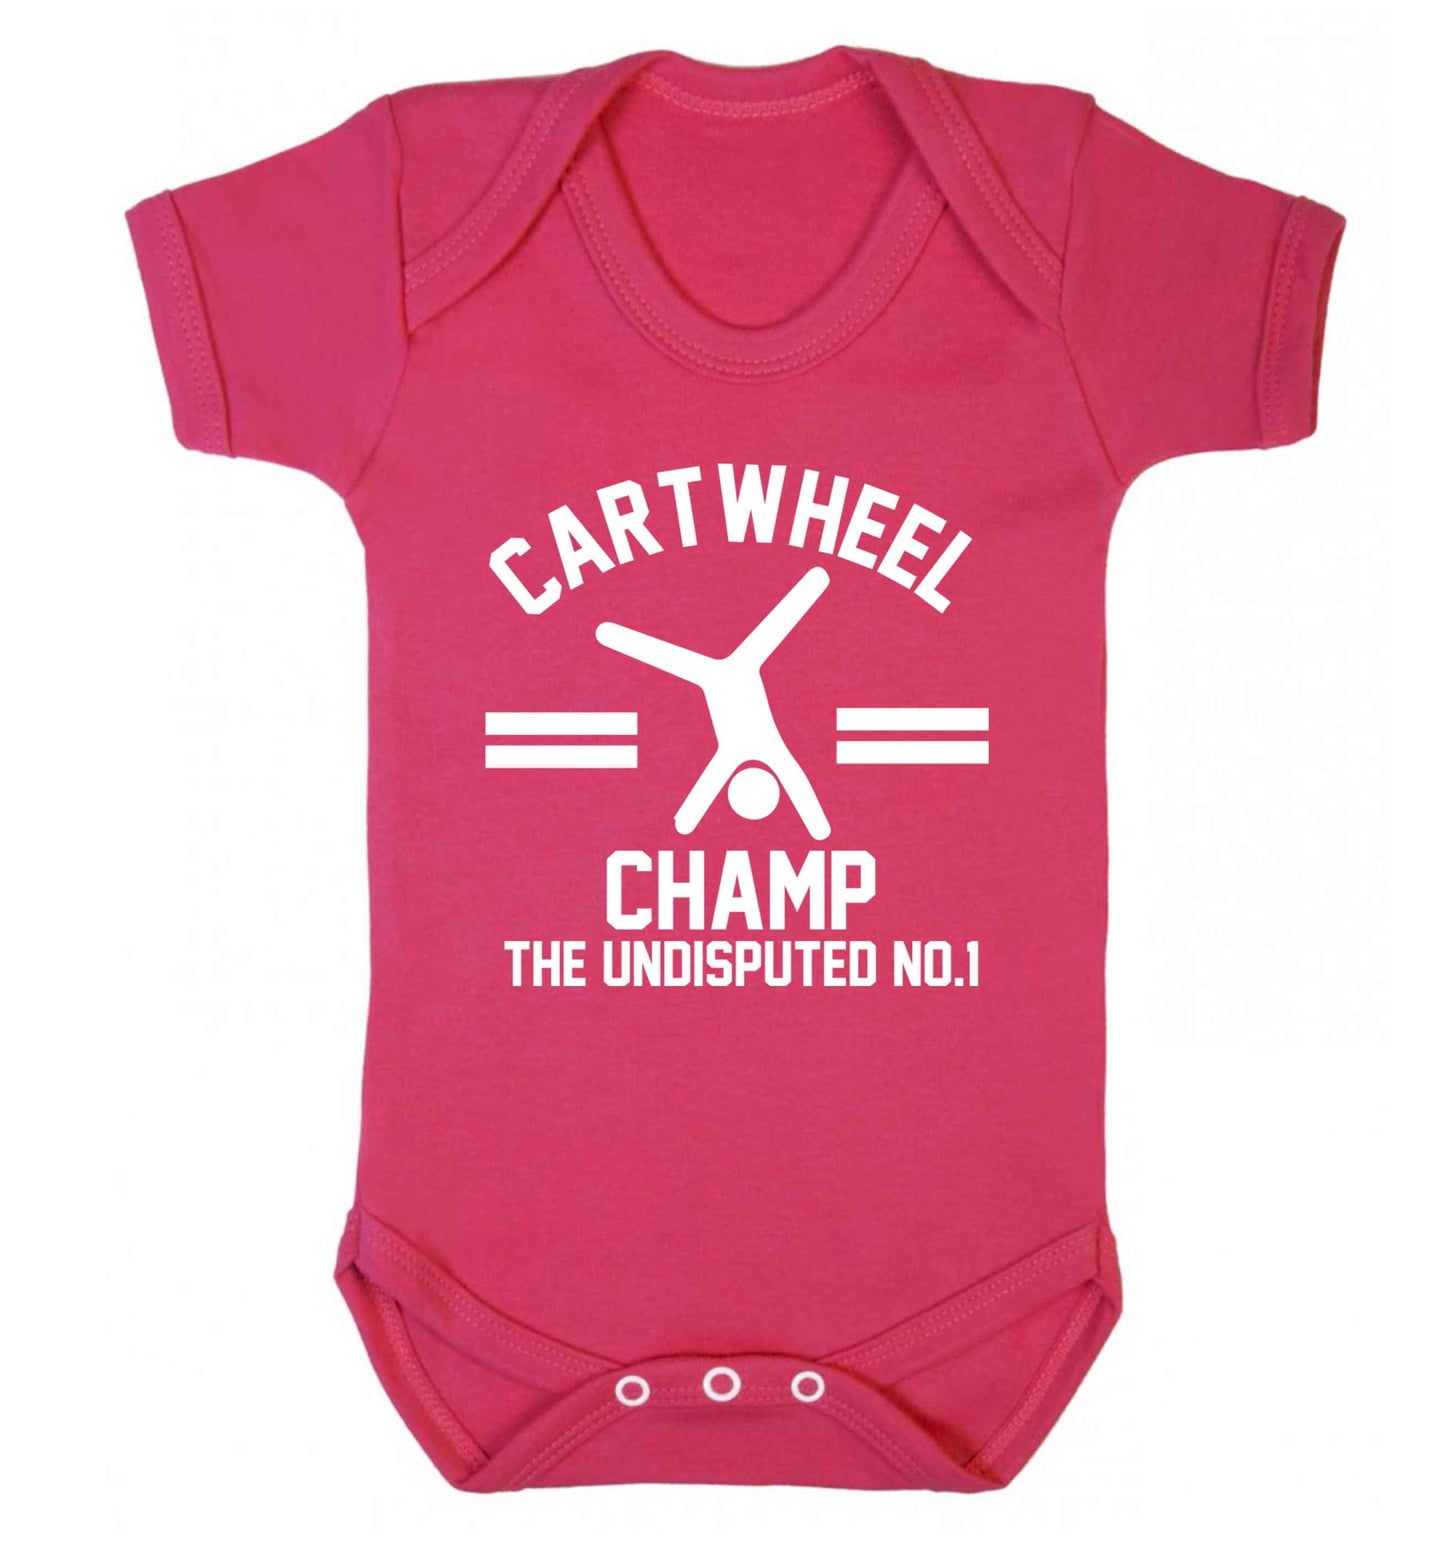 Undisputed cartwheel championship no.1  Baby Vest dark pink 18-24 months